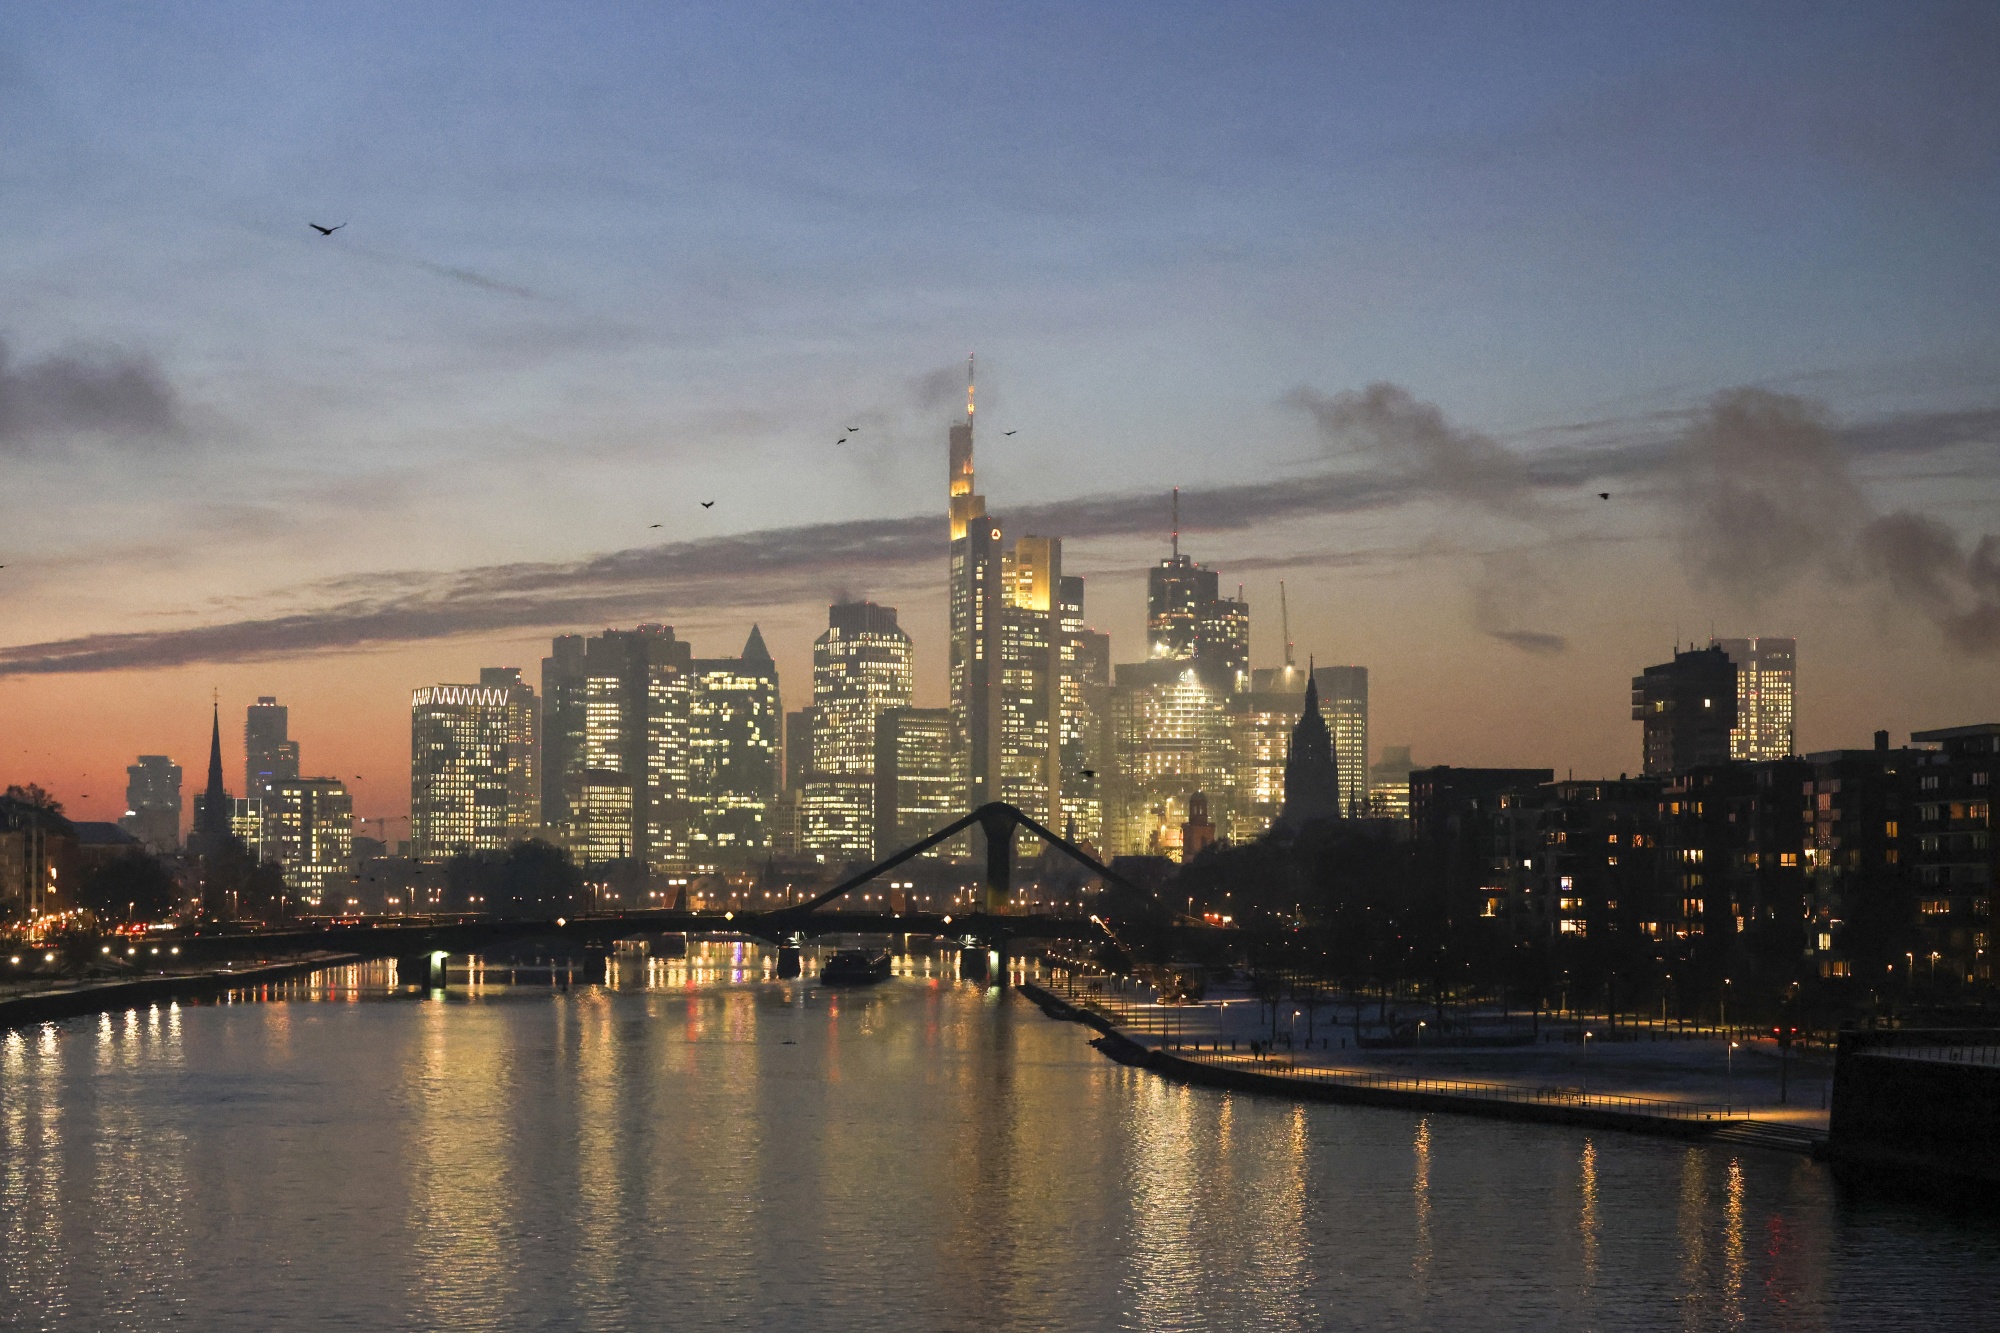 The Frankfurt skyline.